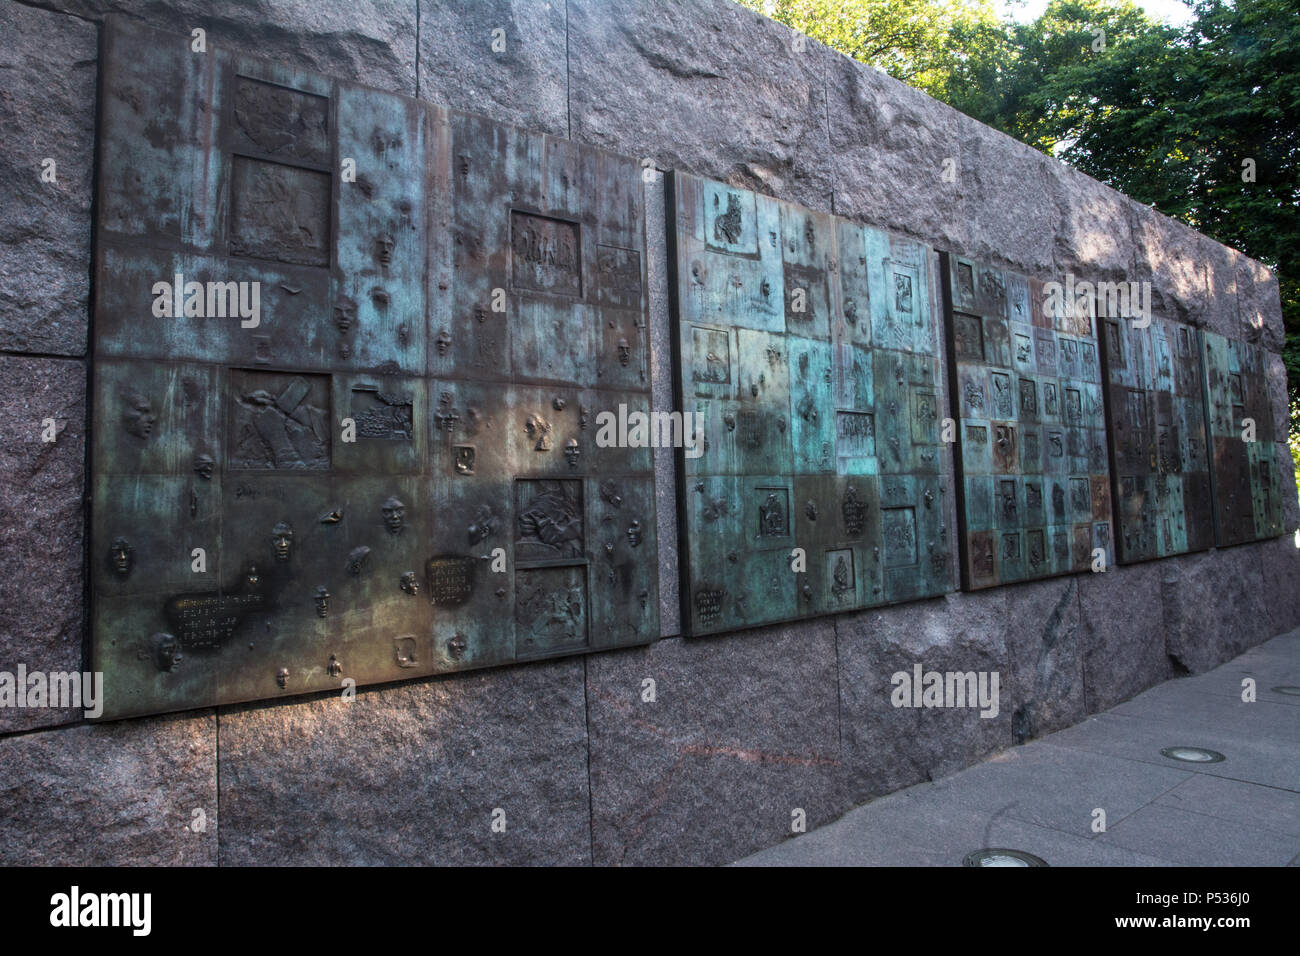 Social Programs bronze releif sculpture in the Franklin Delano Roosevelt Memorial, Washington, DC Stock Photo